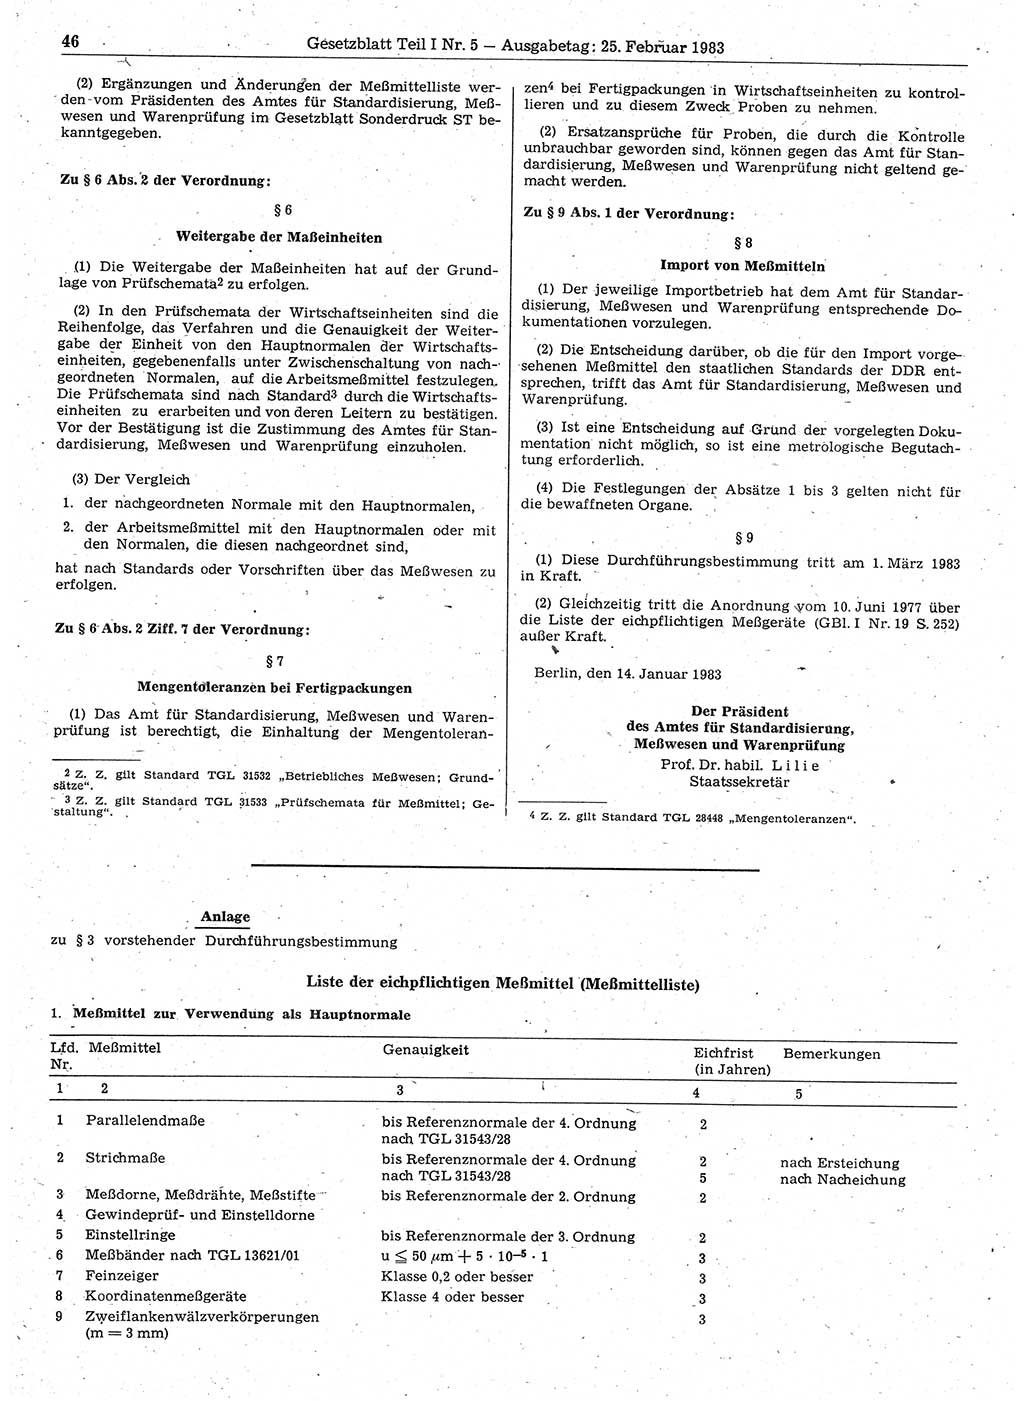 Gesetzblatt (GBl.) der Deutschen Demokratischen Republik (DDR) Teil Ⅰ 1983, Seite 46 (GBl. DDR Ⅰ 1983, S. 46)